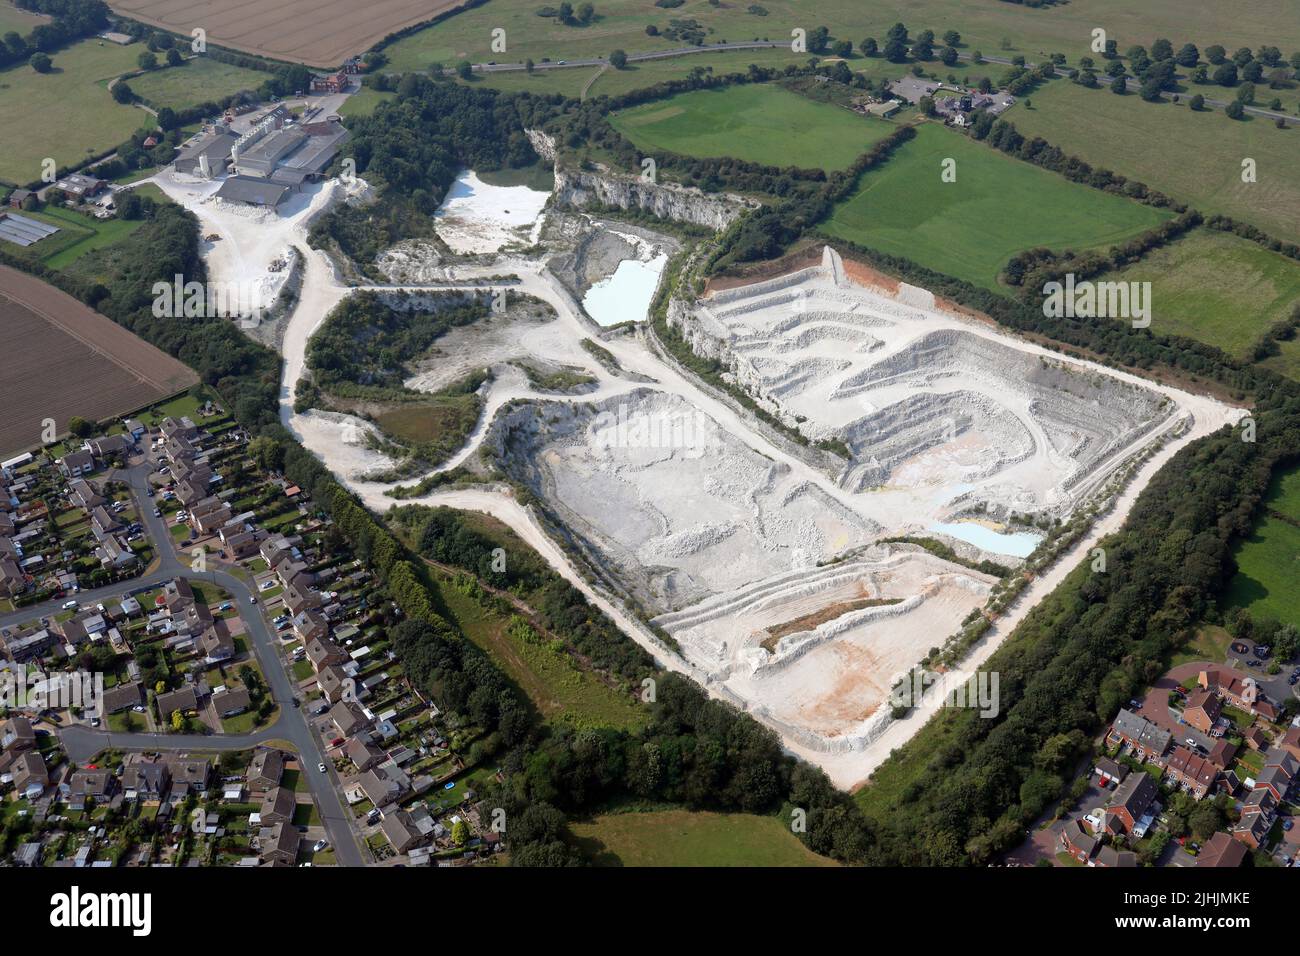 Vista aérea de la cantera de Imerys Minerals en Beverley, East Yorkshire Foto de stock